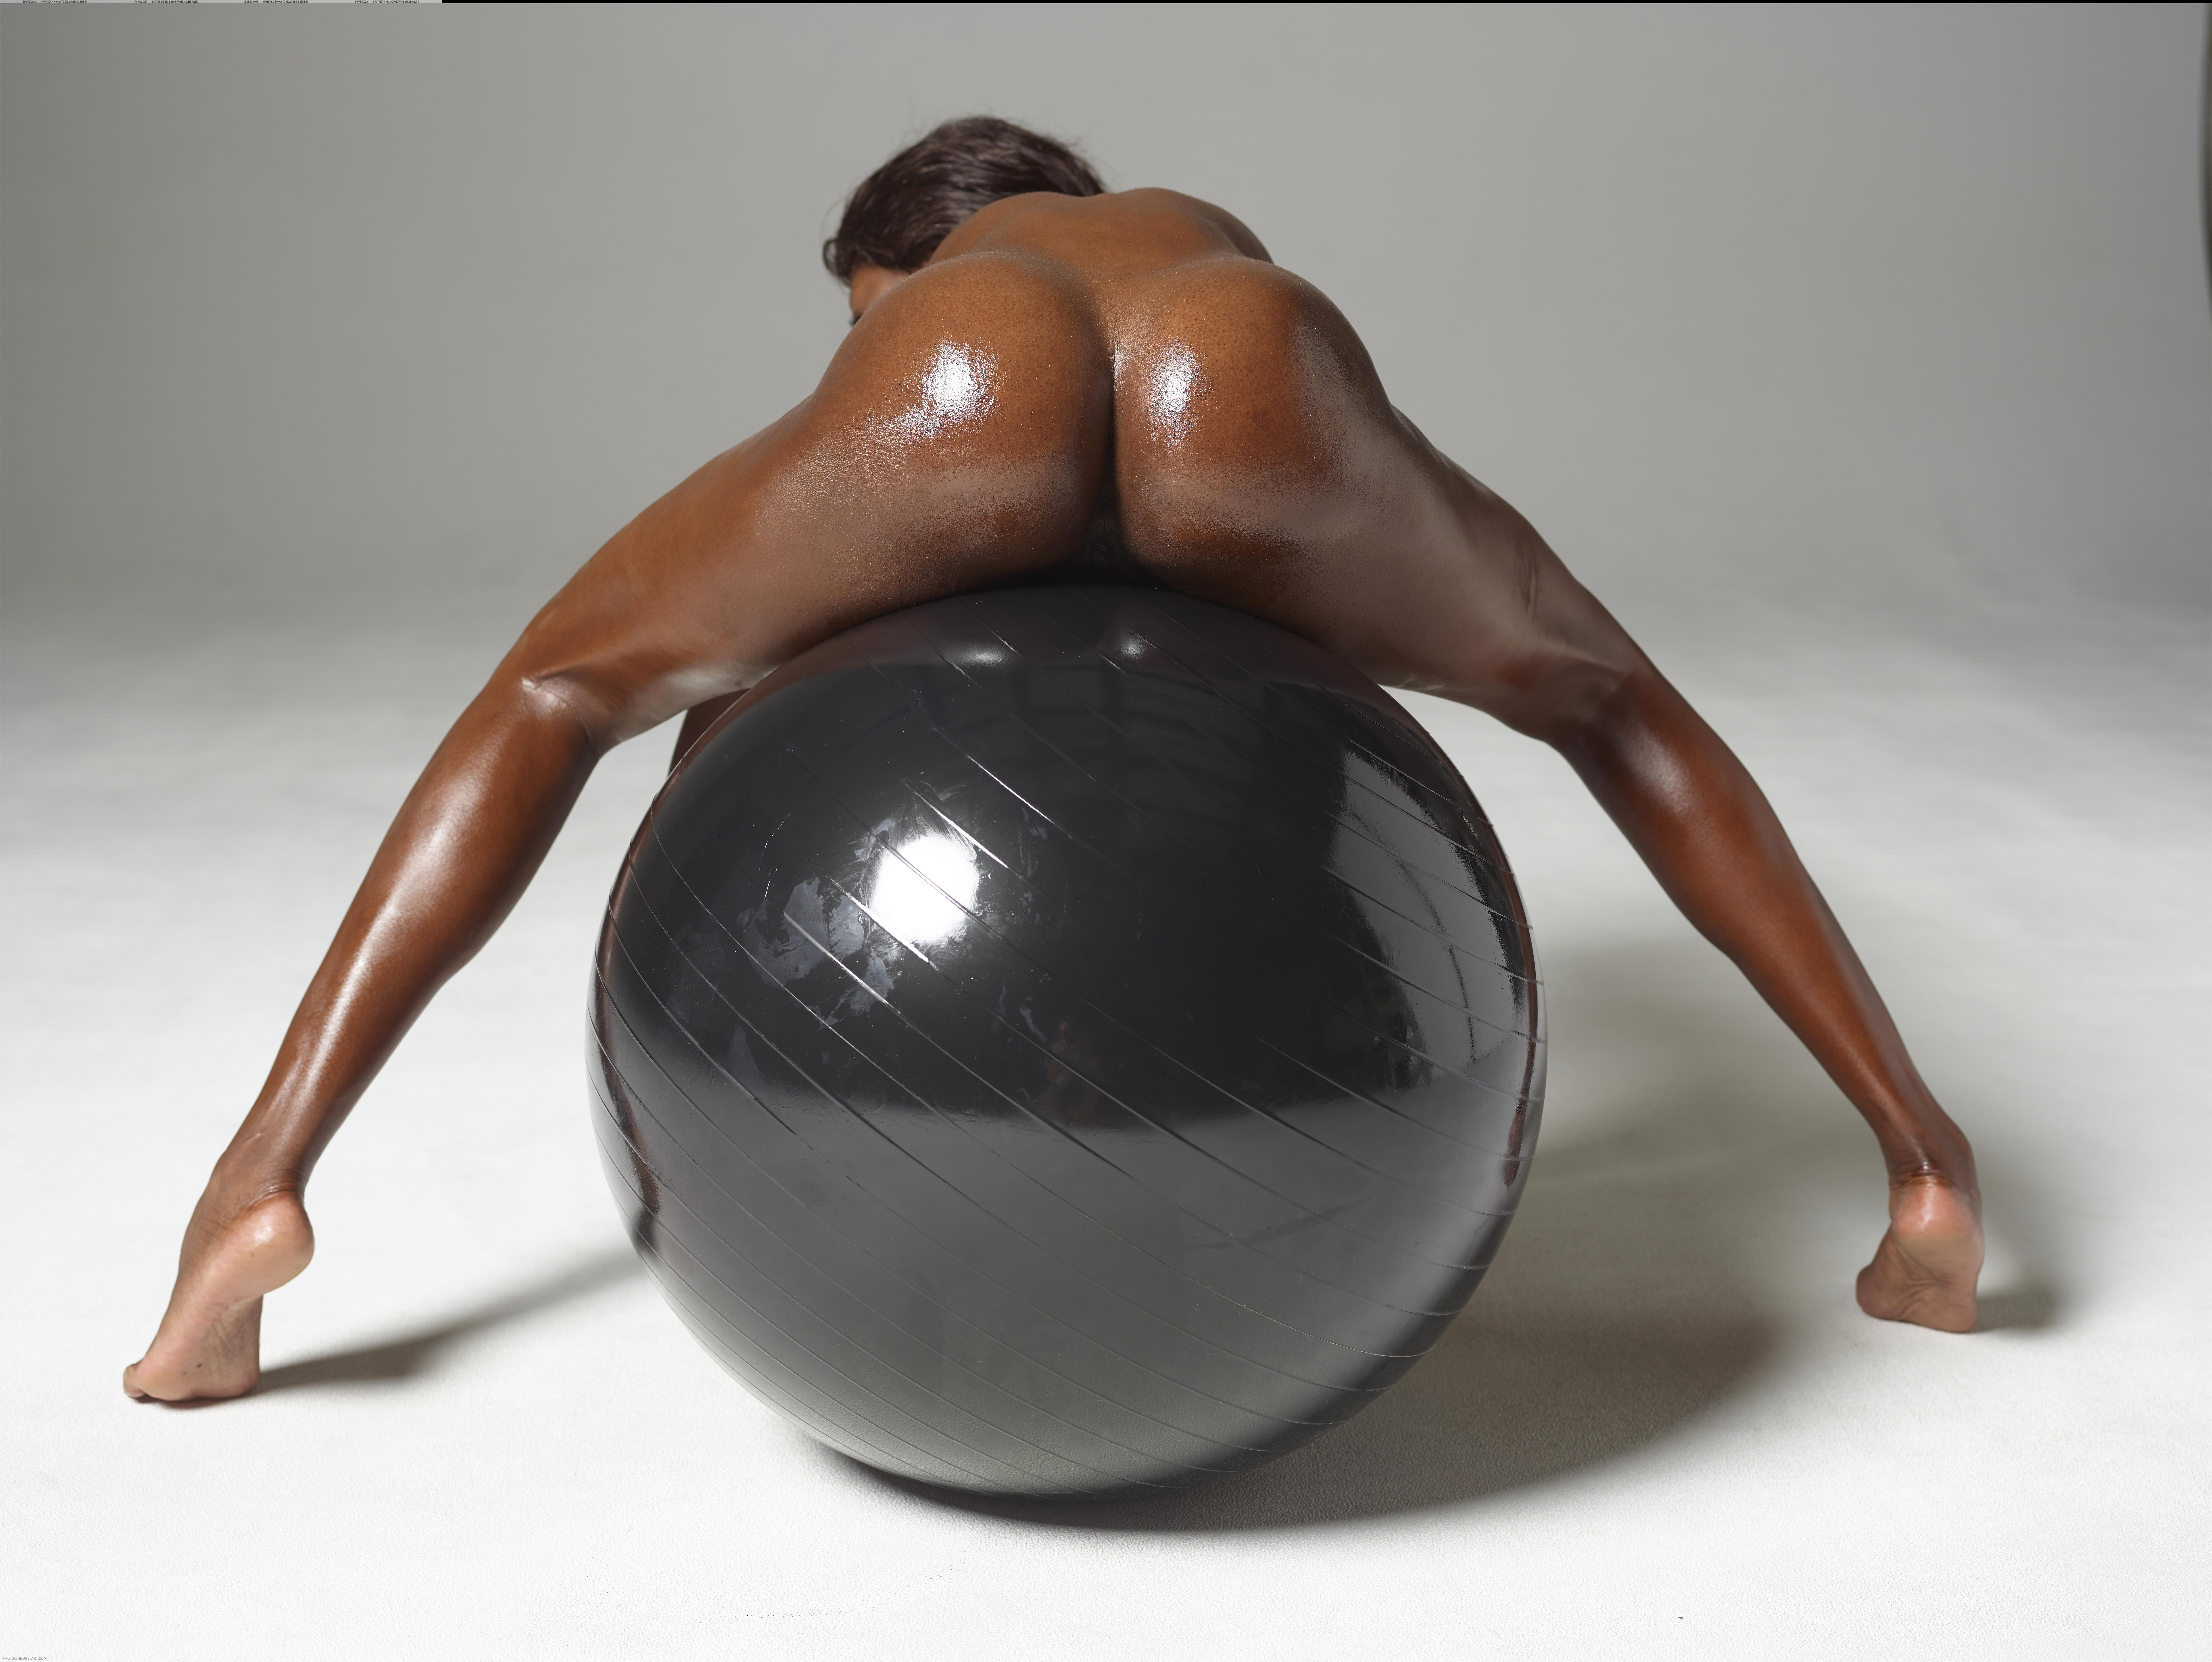 Сексуальная Irene сидит на большом мяче голая